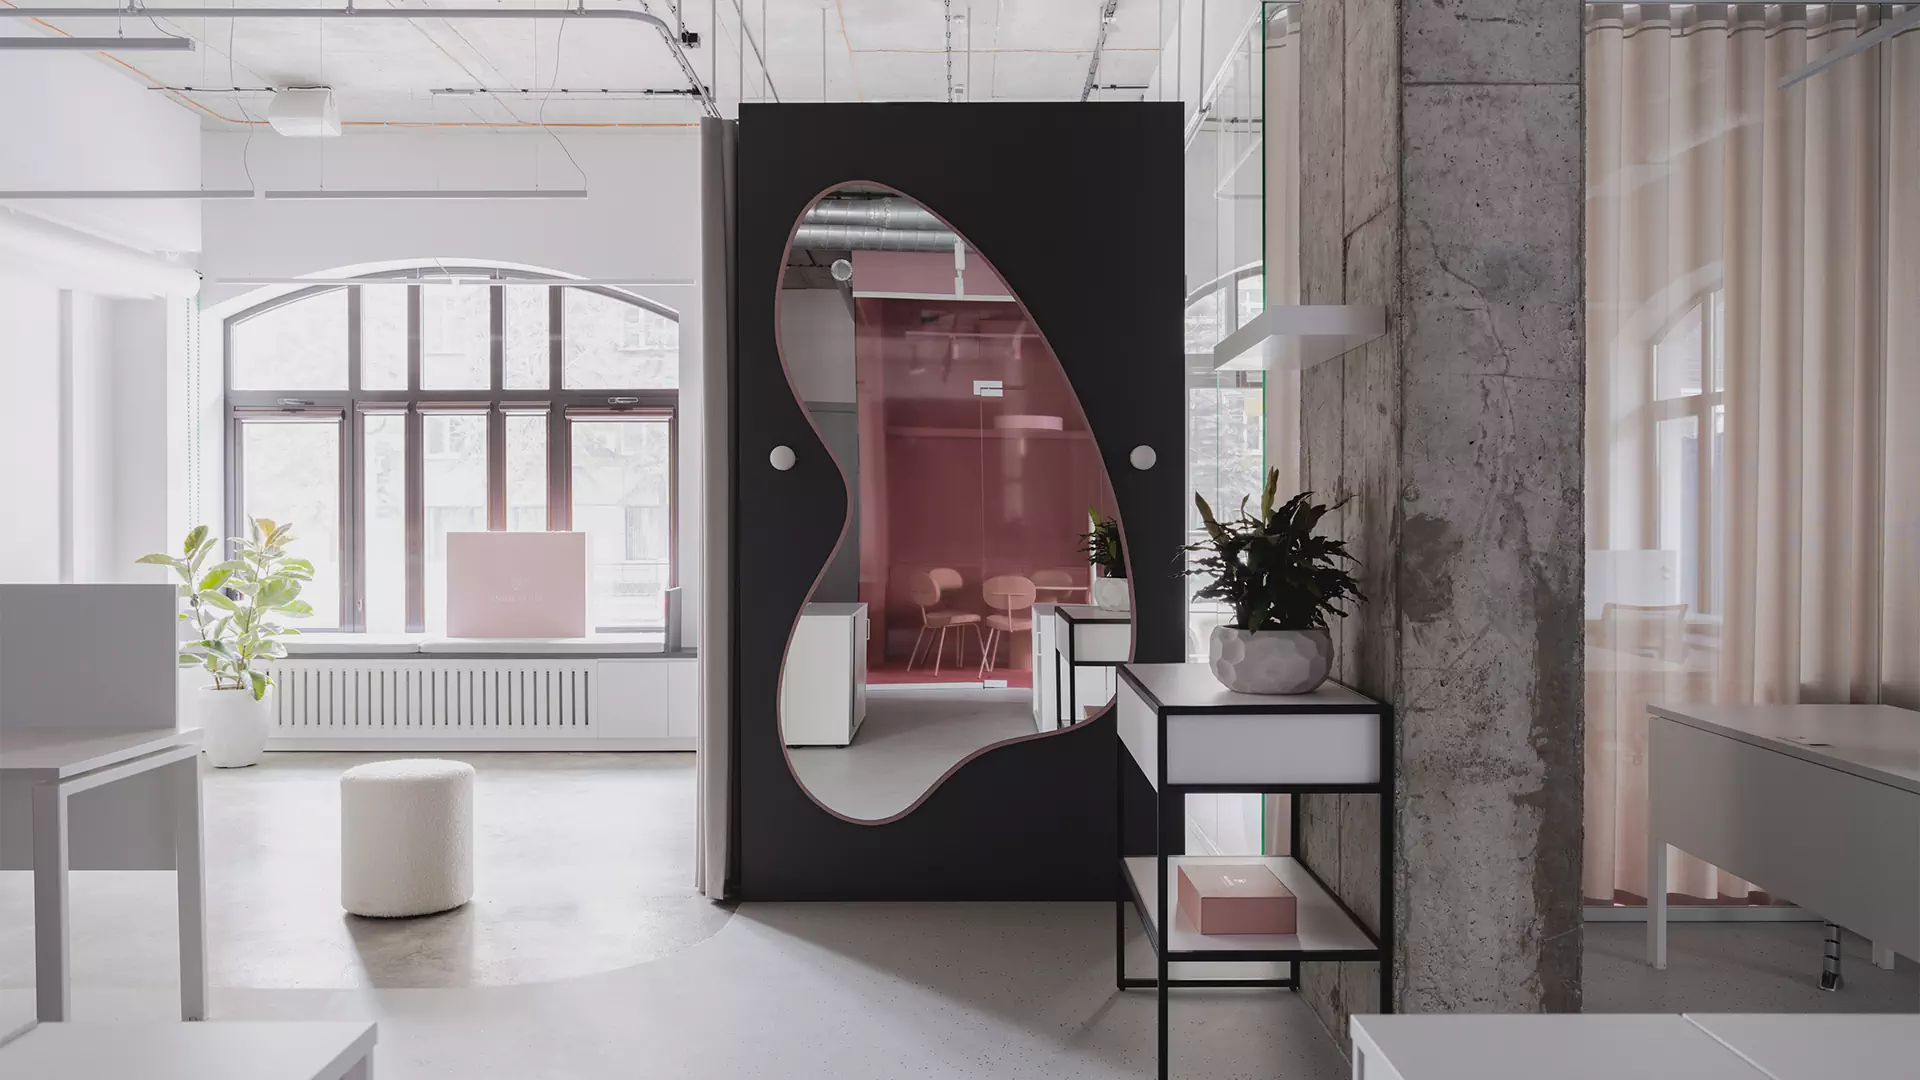 Акцентный розовый куб в интерьере офиса для бренда купальников — проект Лины Дедюхиной и Натальи Стадник